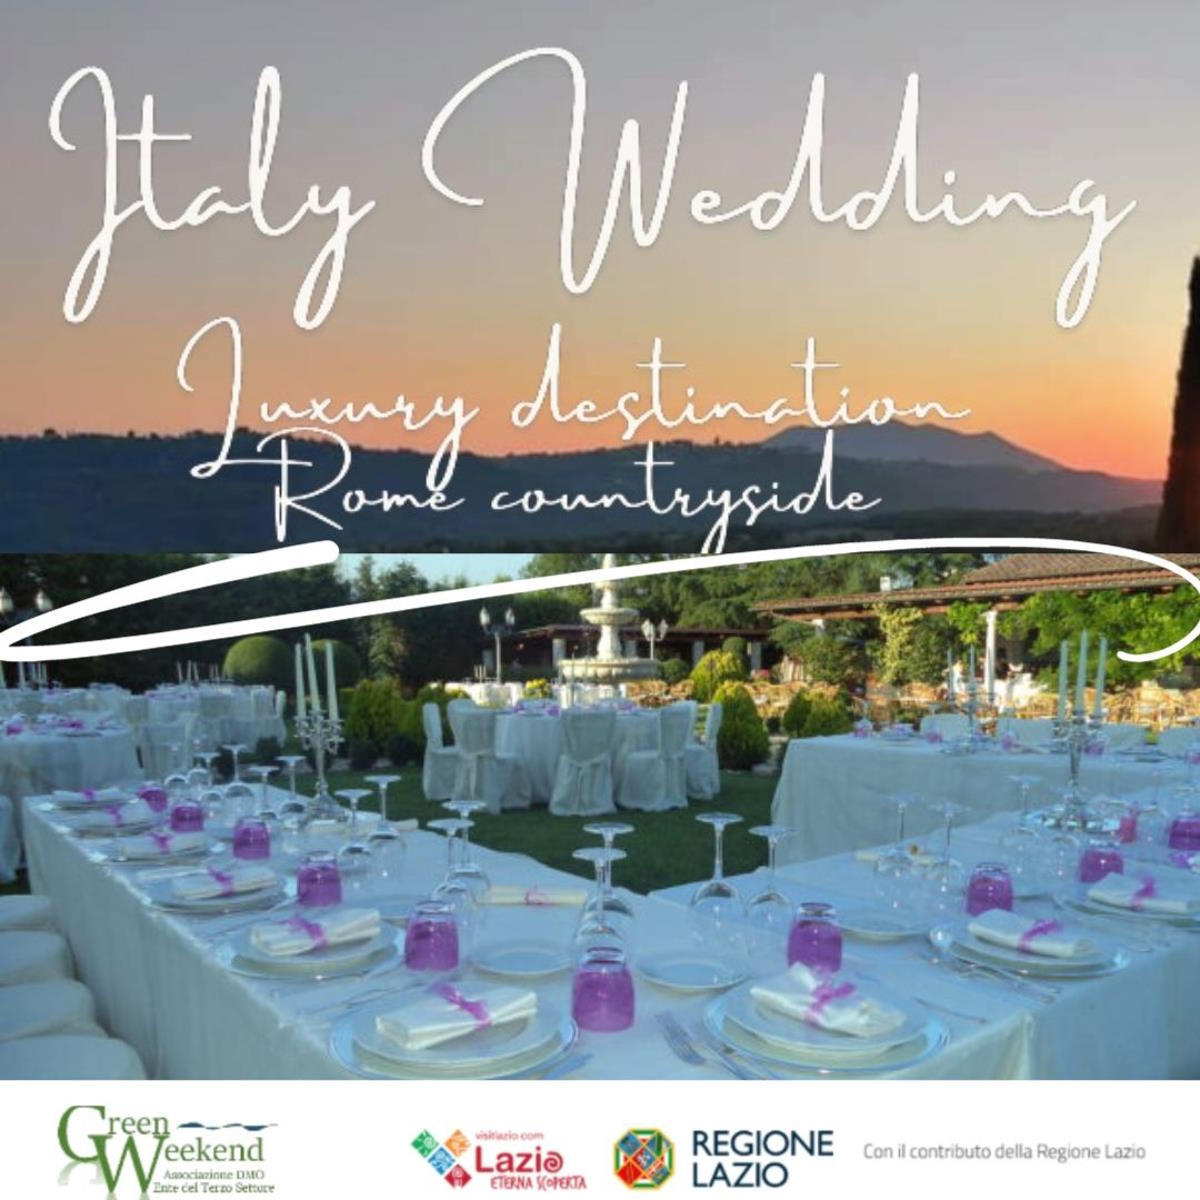 DMO Green Weekend promuove il “weddingTuscia” all’estero